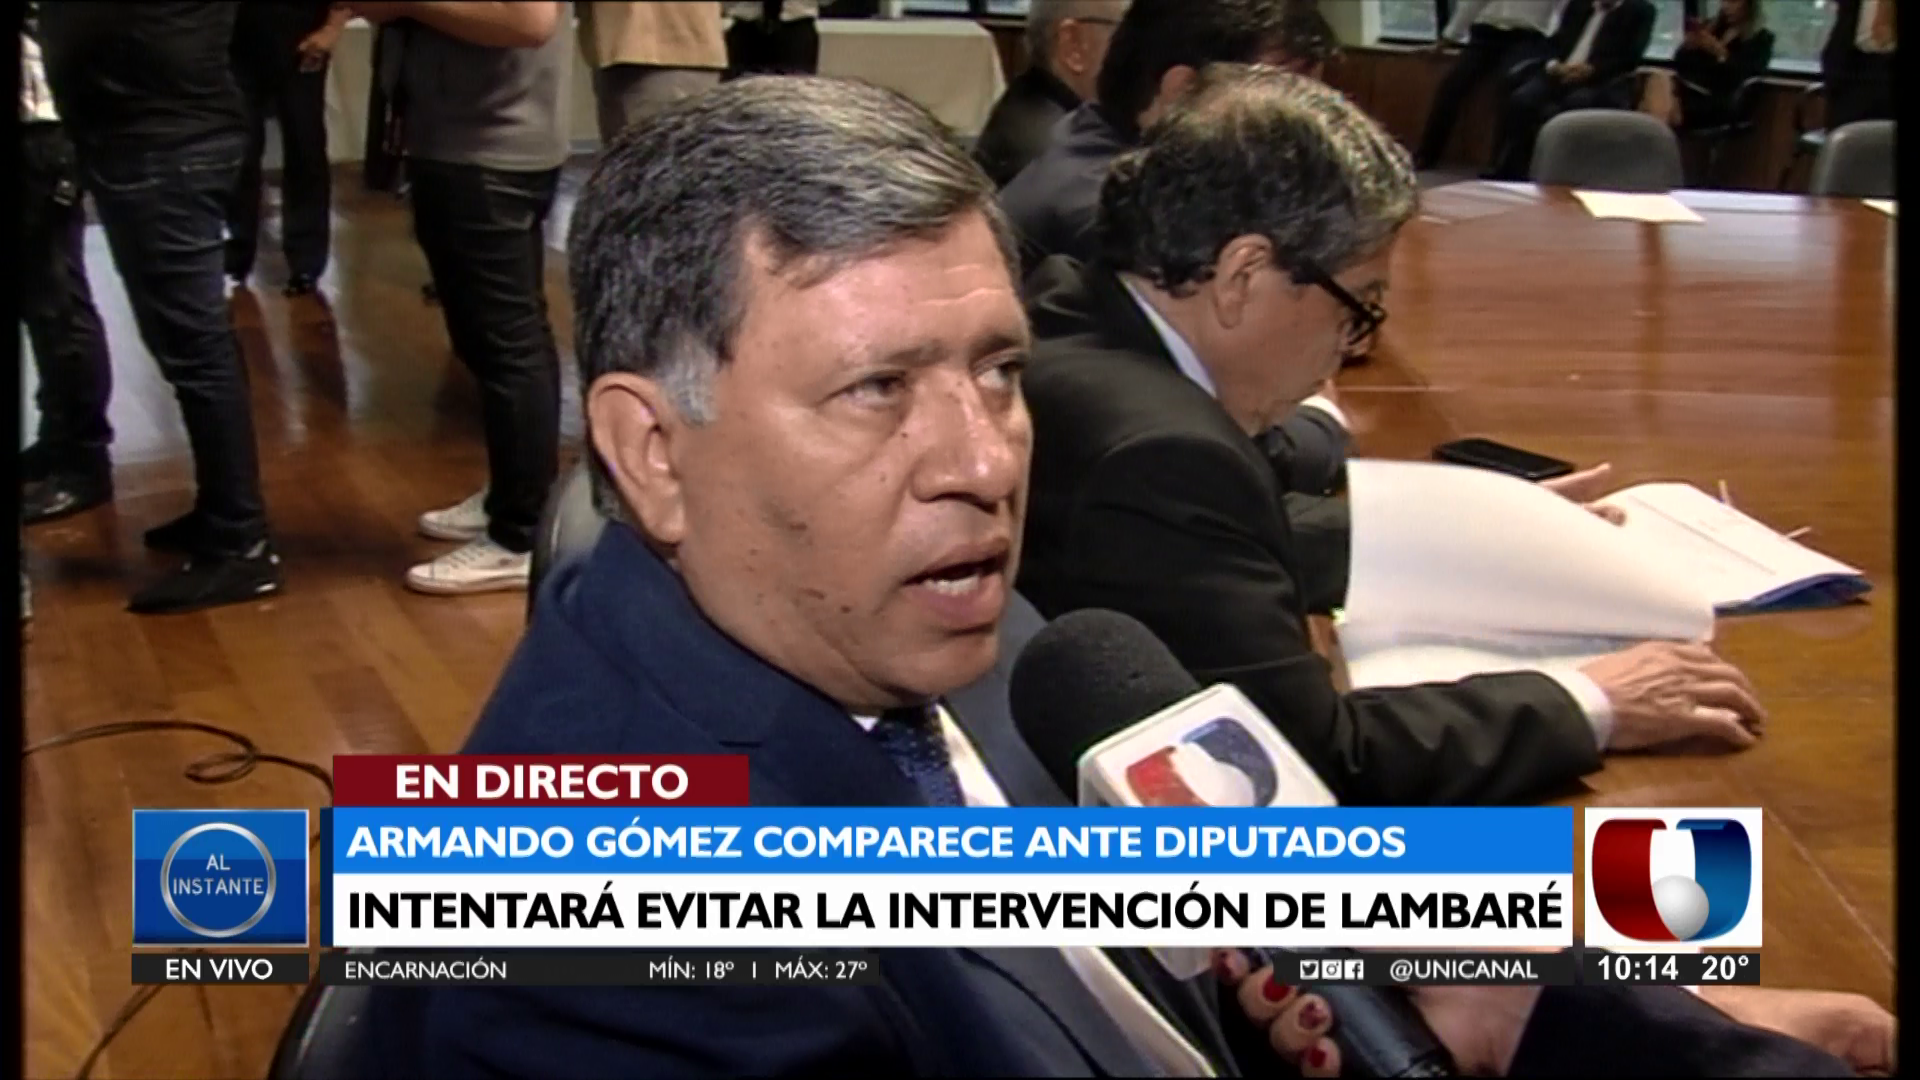 El intendente de Lambaré sostiene que el pedido de intervención podría tratarse de una persecución política.